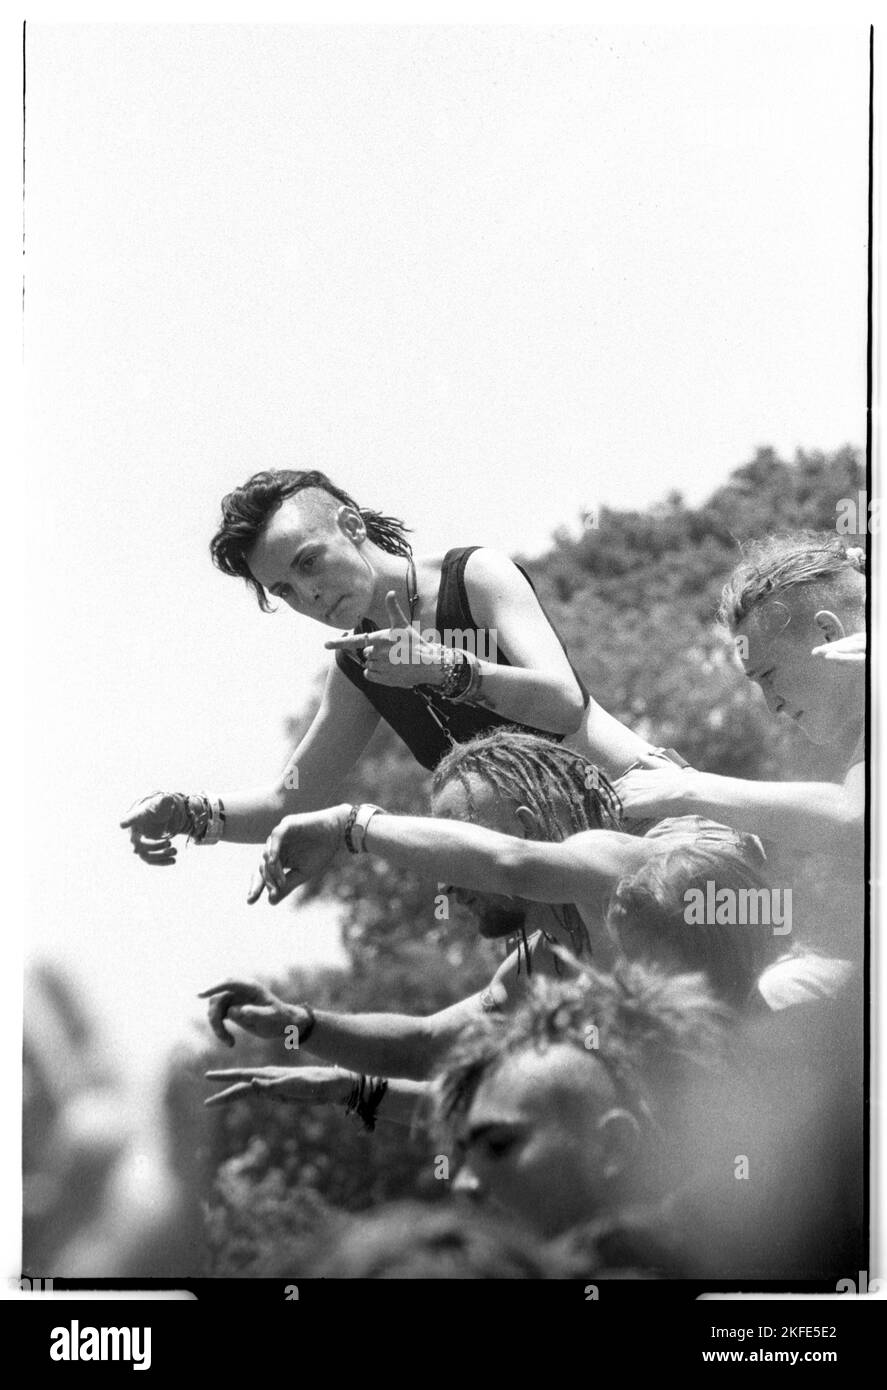 Mohican Hair dansant sur les épaules d'un ami au NME Stage Crowd-surfer au Glastonbury Festival, Pilton, Angleterre, juin 25-27 1993. Photographie : ROB WATKINS Banque D'Images